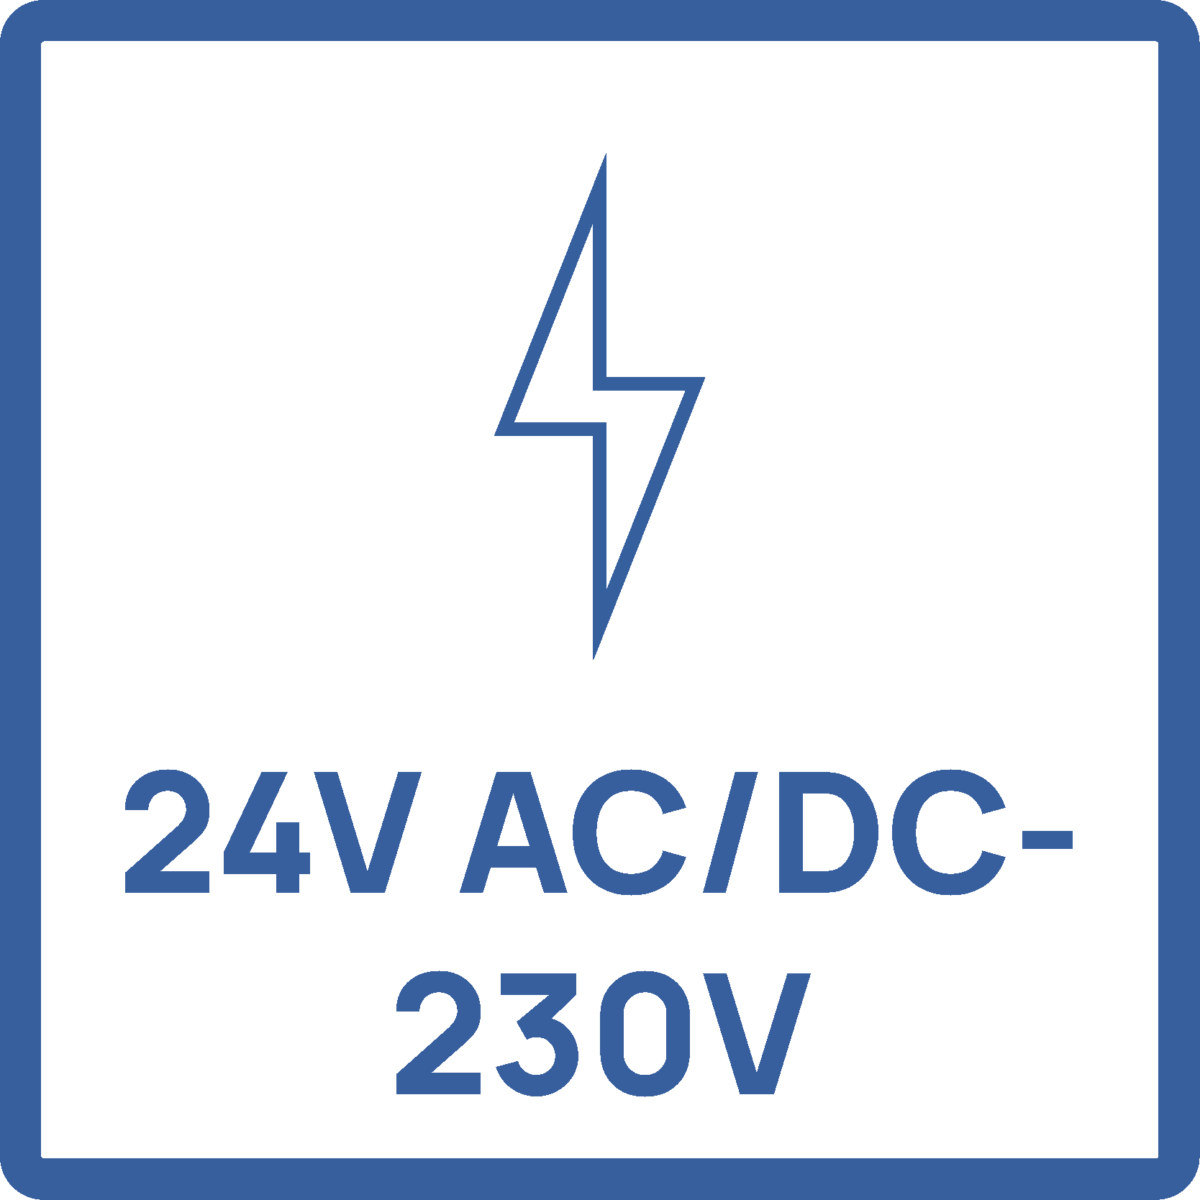 24V ACDC-230V